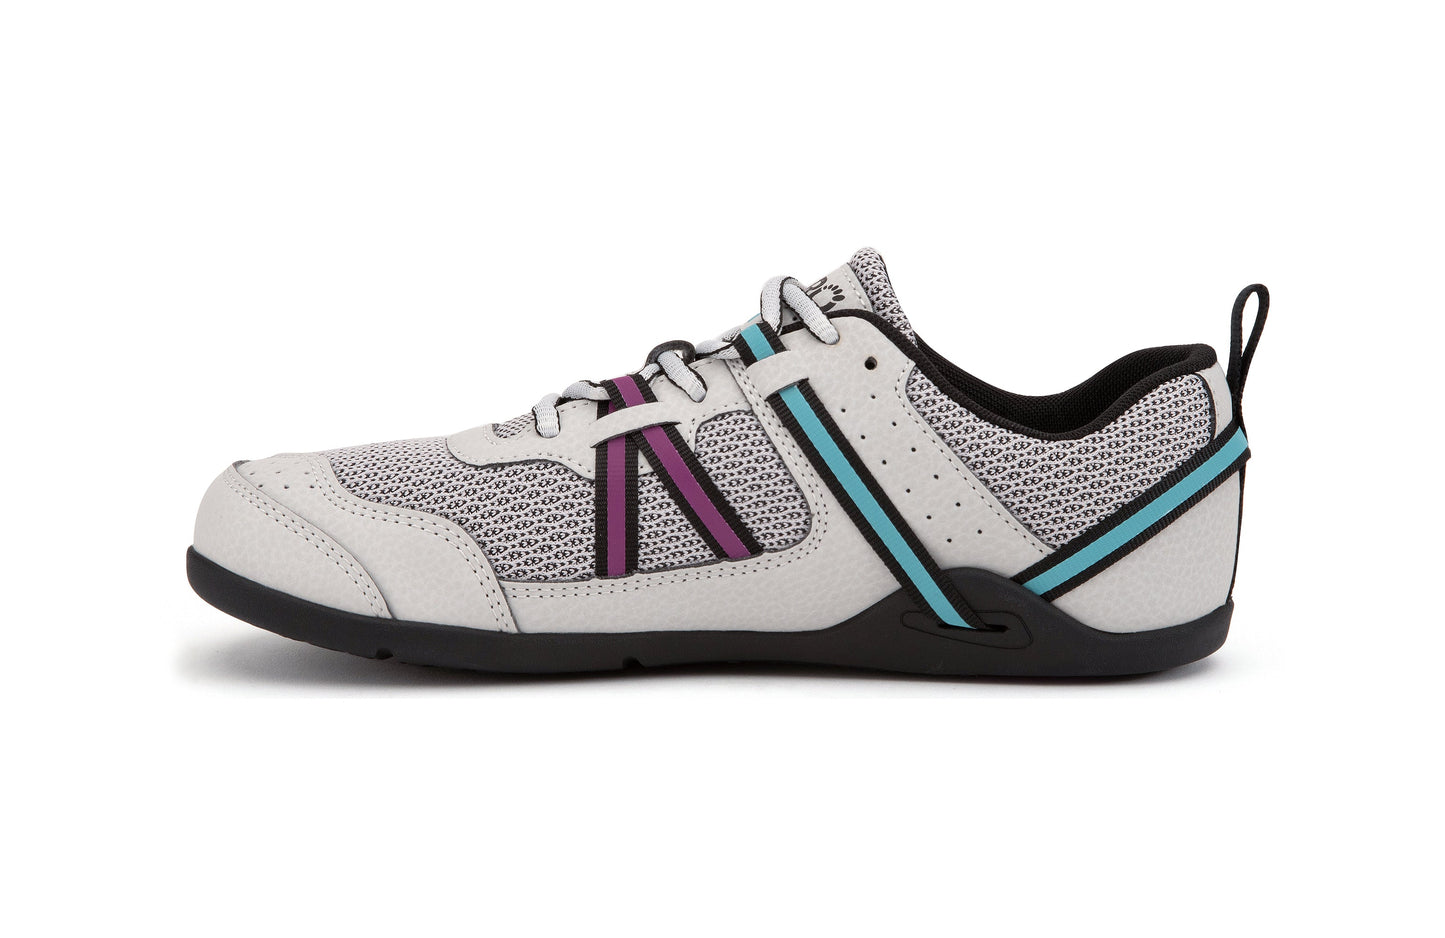 Xero Shoes Prio Womens barfods træningssko til kvinder i farven lunar, inderside